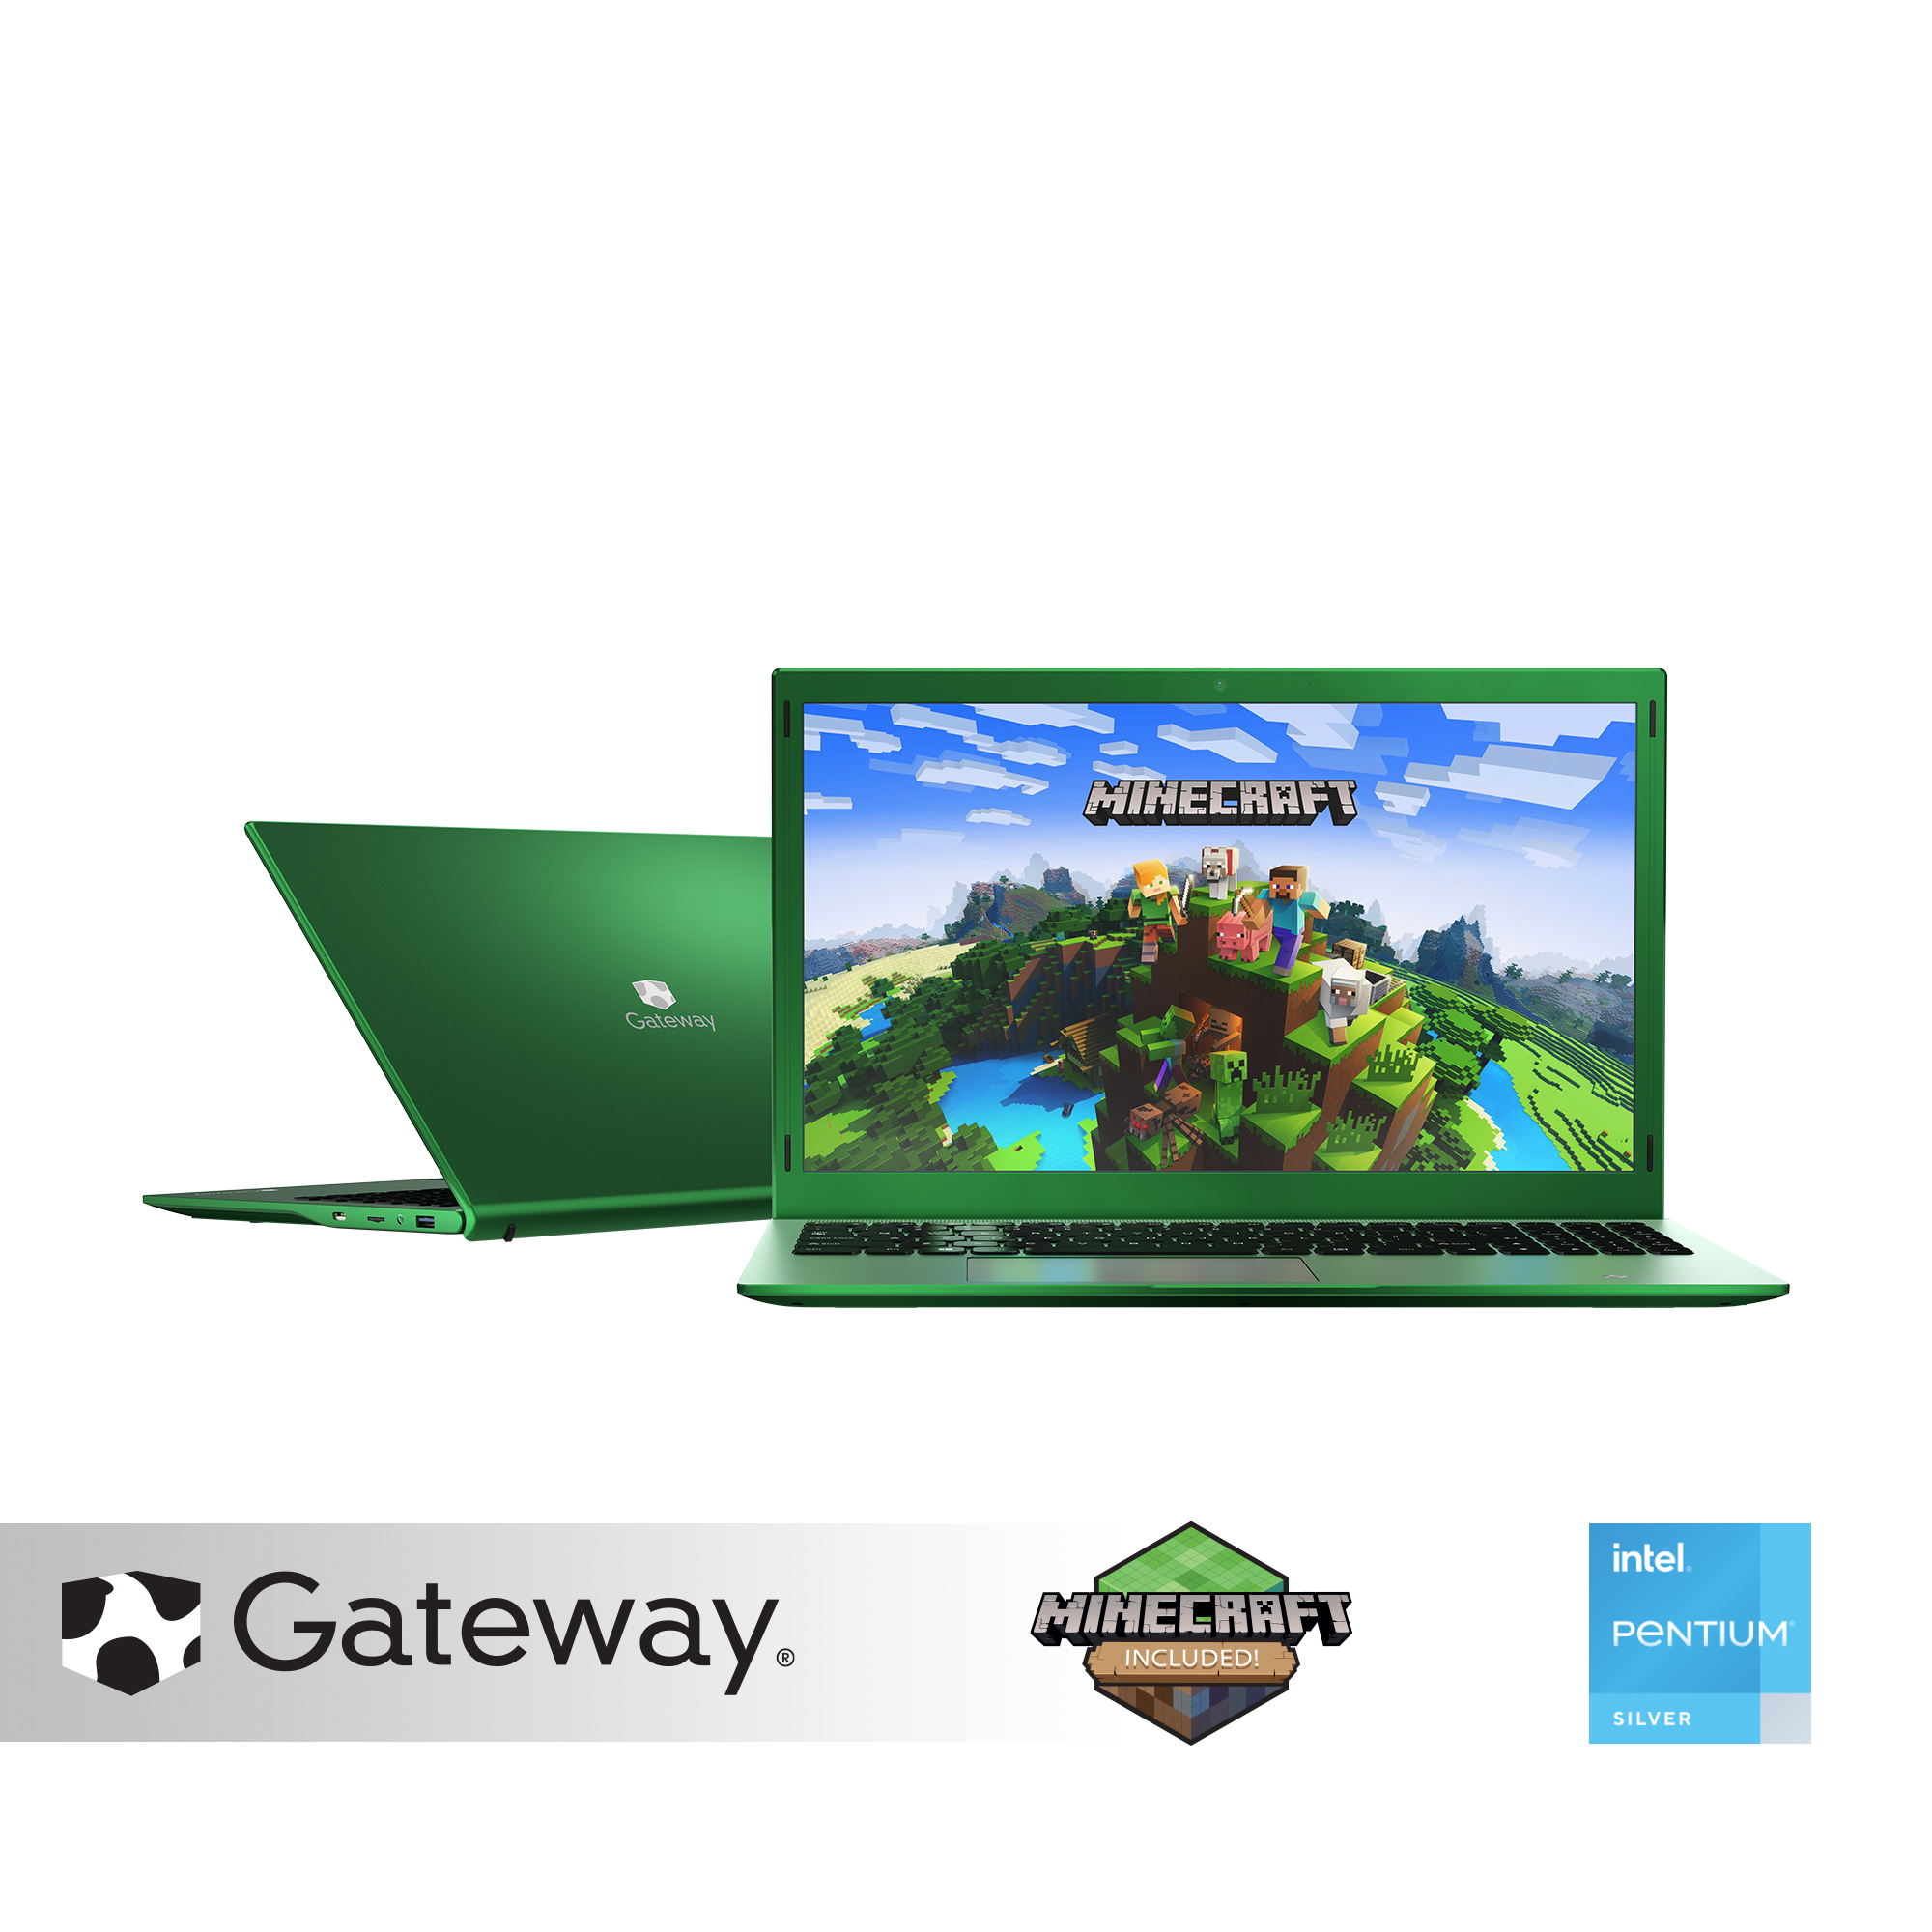 Gateway GWTN156-11MC Laptop: 15.6" FHD IPS, Celeron N5030, 4GB DDR4, 128GB eMMC, Win10 in S mode, Office 365 1Yr @ $179 + F/S